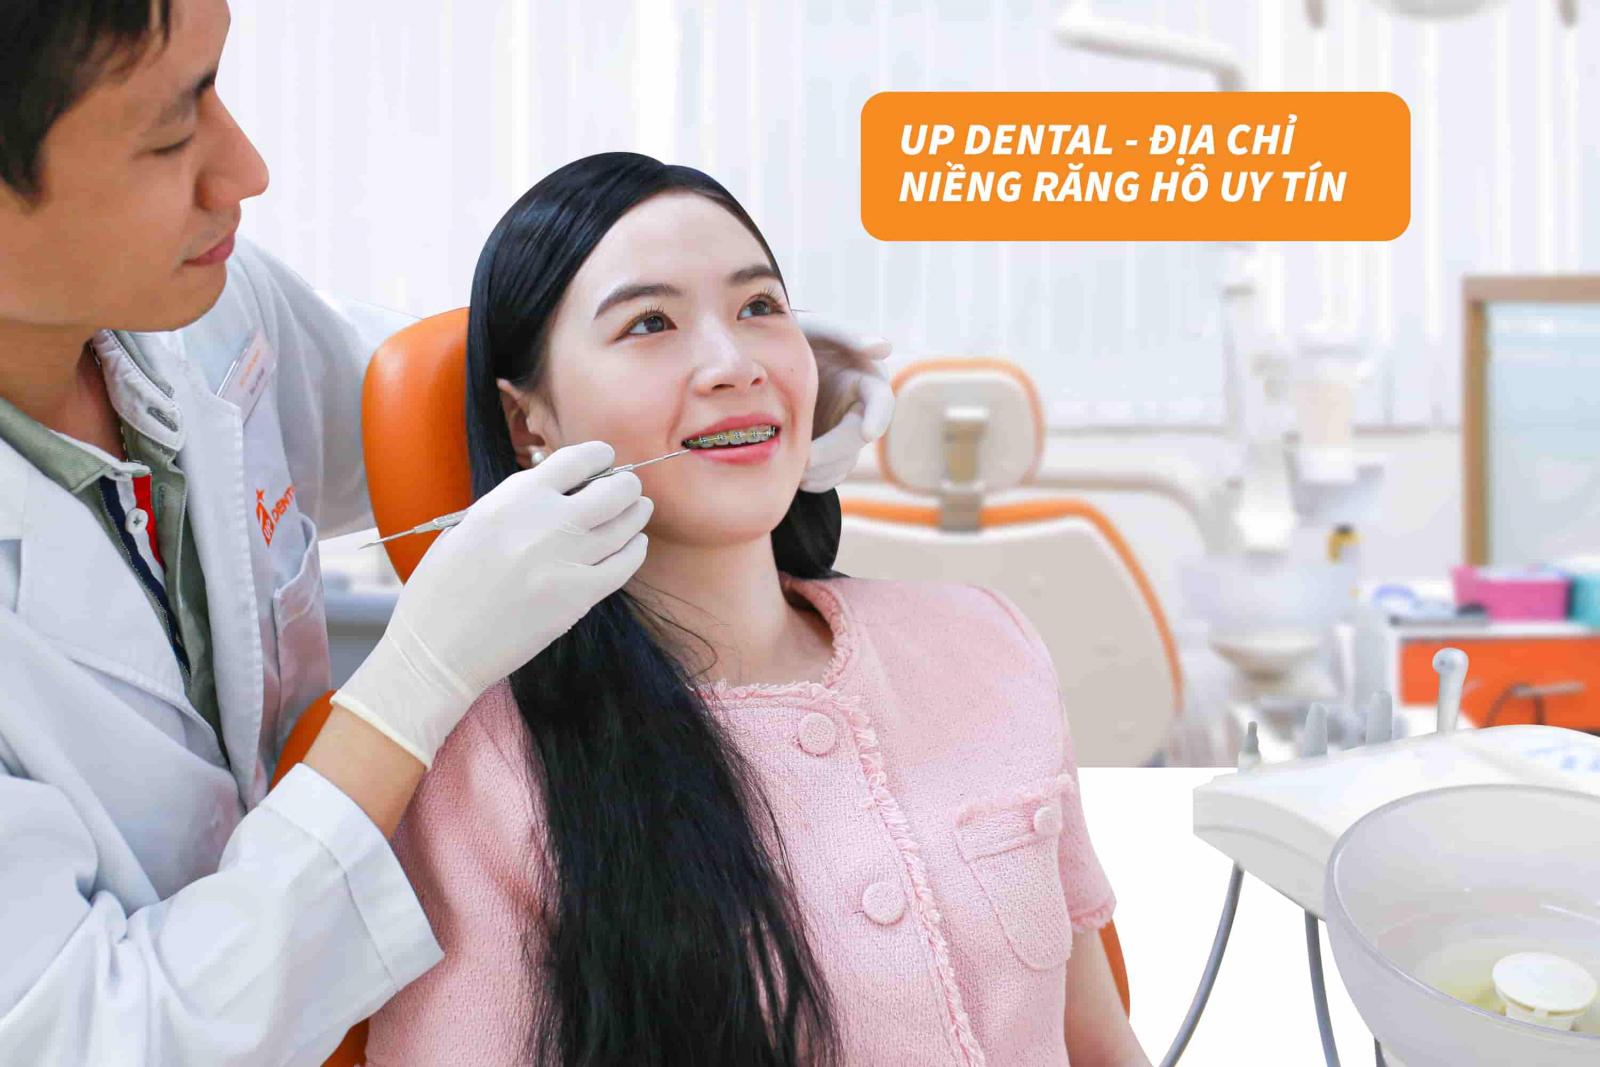 Up Dental - địa chỉ niềng răng hô uy tín tại TP.HCM